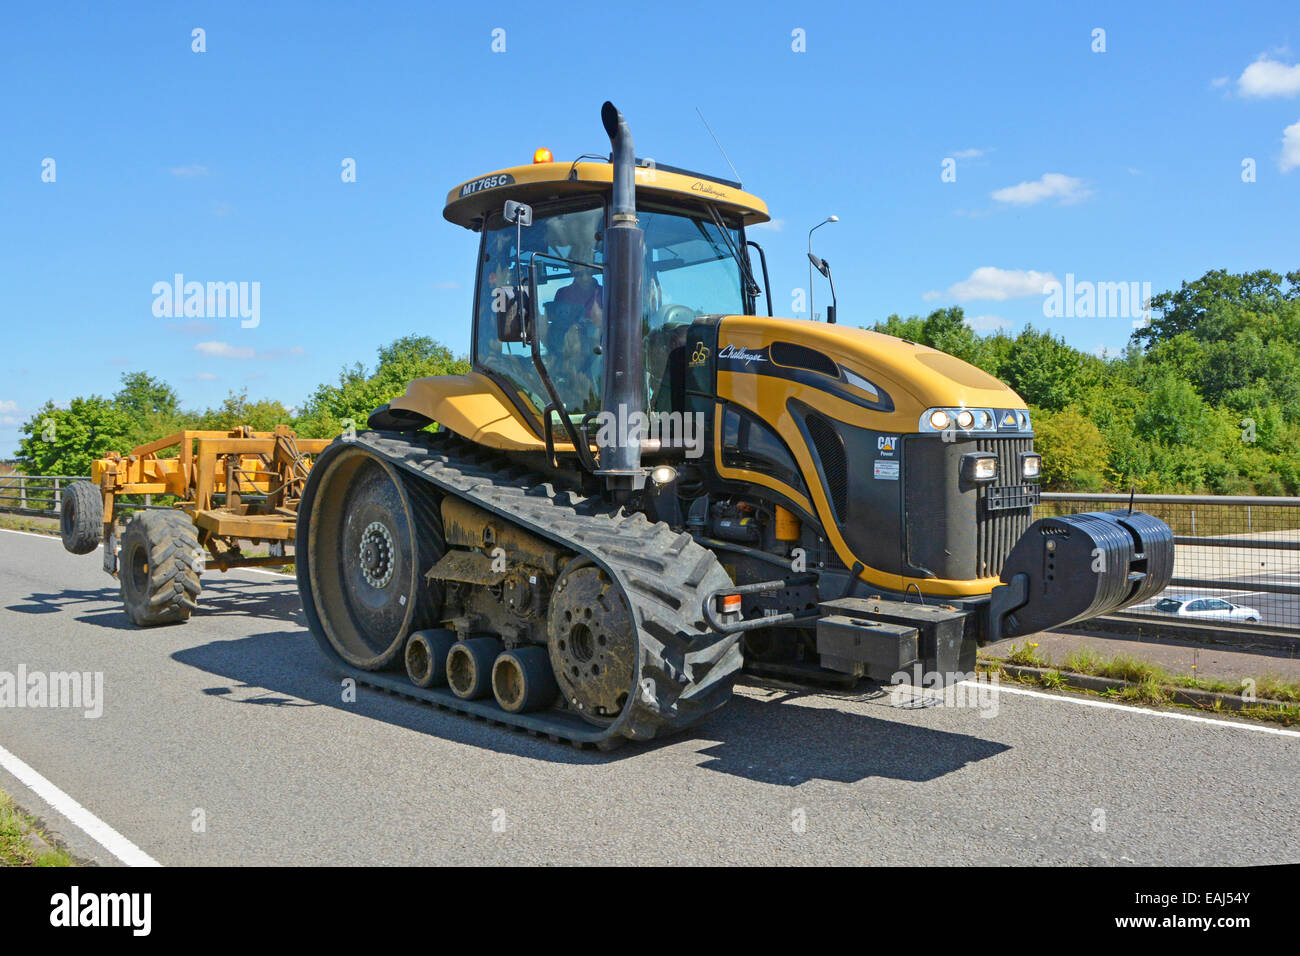 Agriculture à chenilles de véhicule large tracteur agricole Challenger Caterpillar conduisant un pont de route publique rurale traversant l'autoroute M25 Essex Angleterre Royaume-Uni Banque D'Images